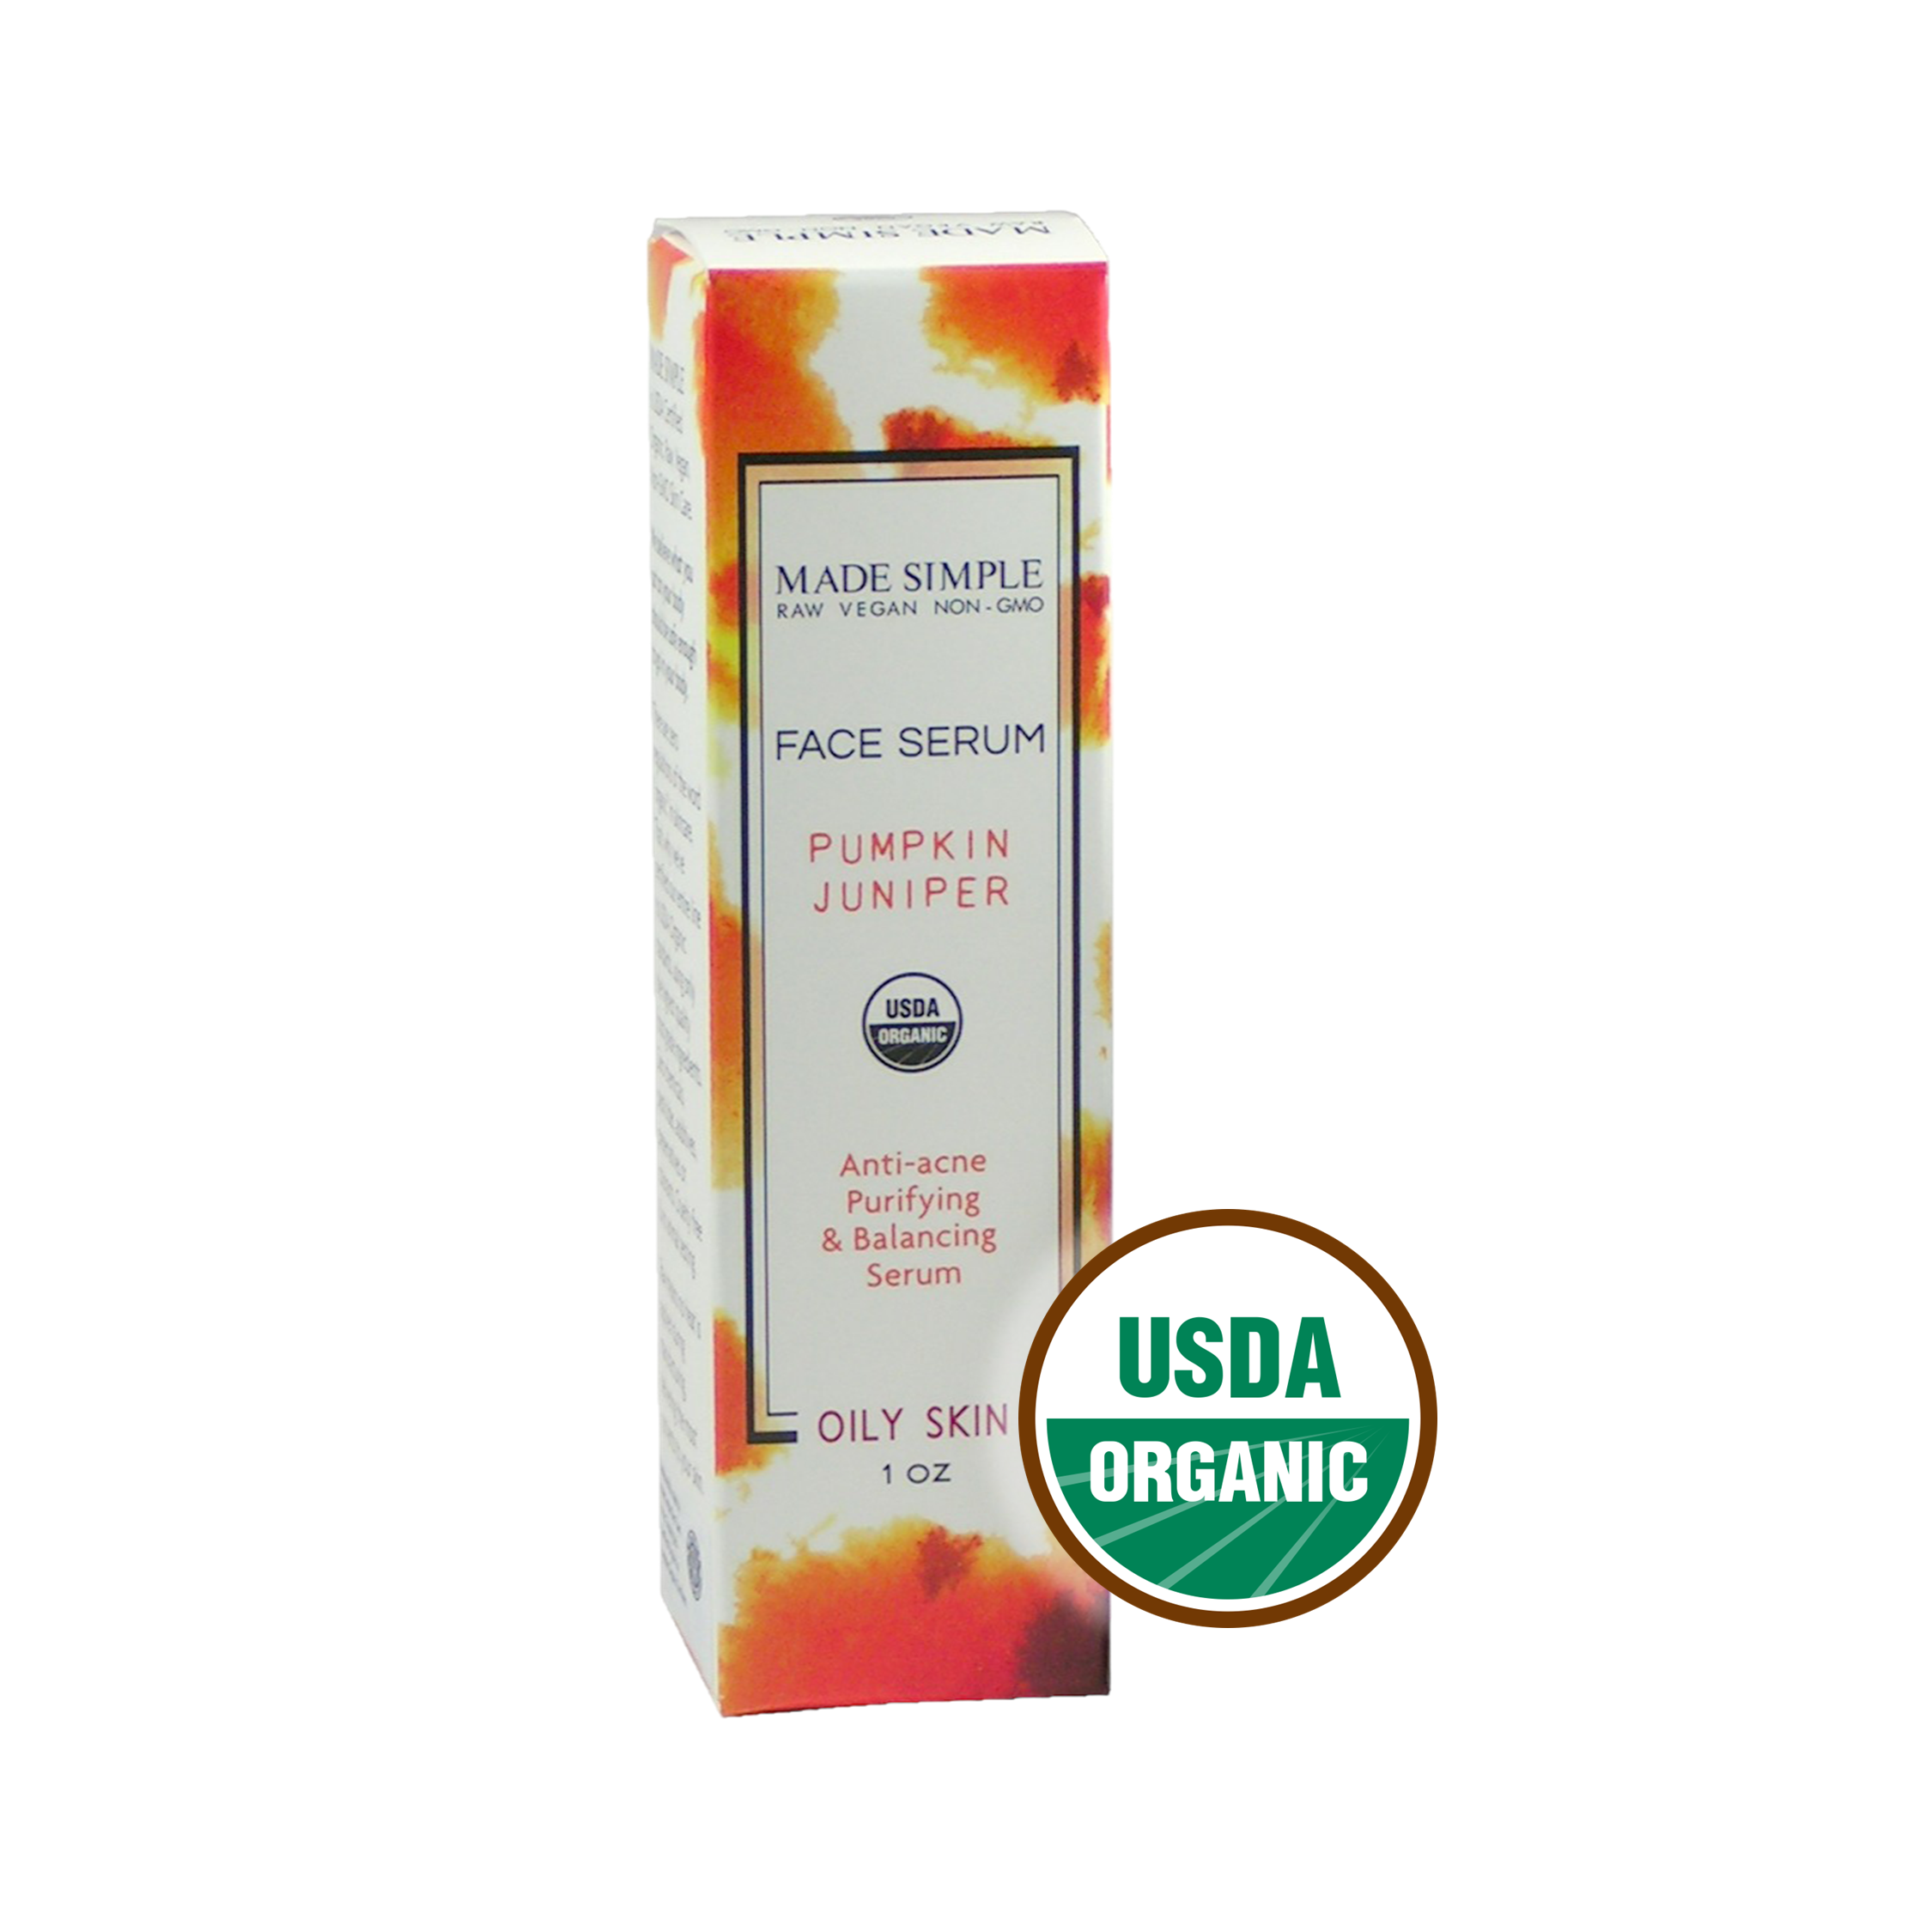 Made Simple Skin Care Pumpkin Juniper Face Serum certified organic raw vegan non-gmo Pumpkin Juniper